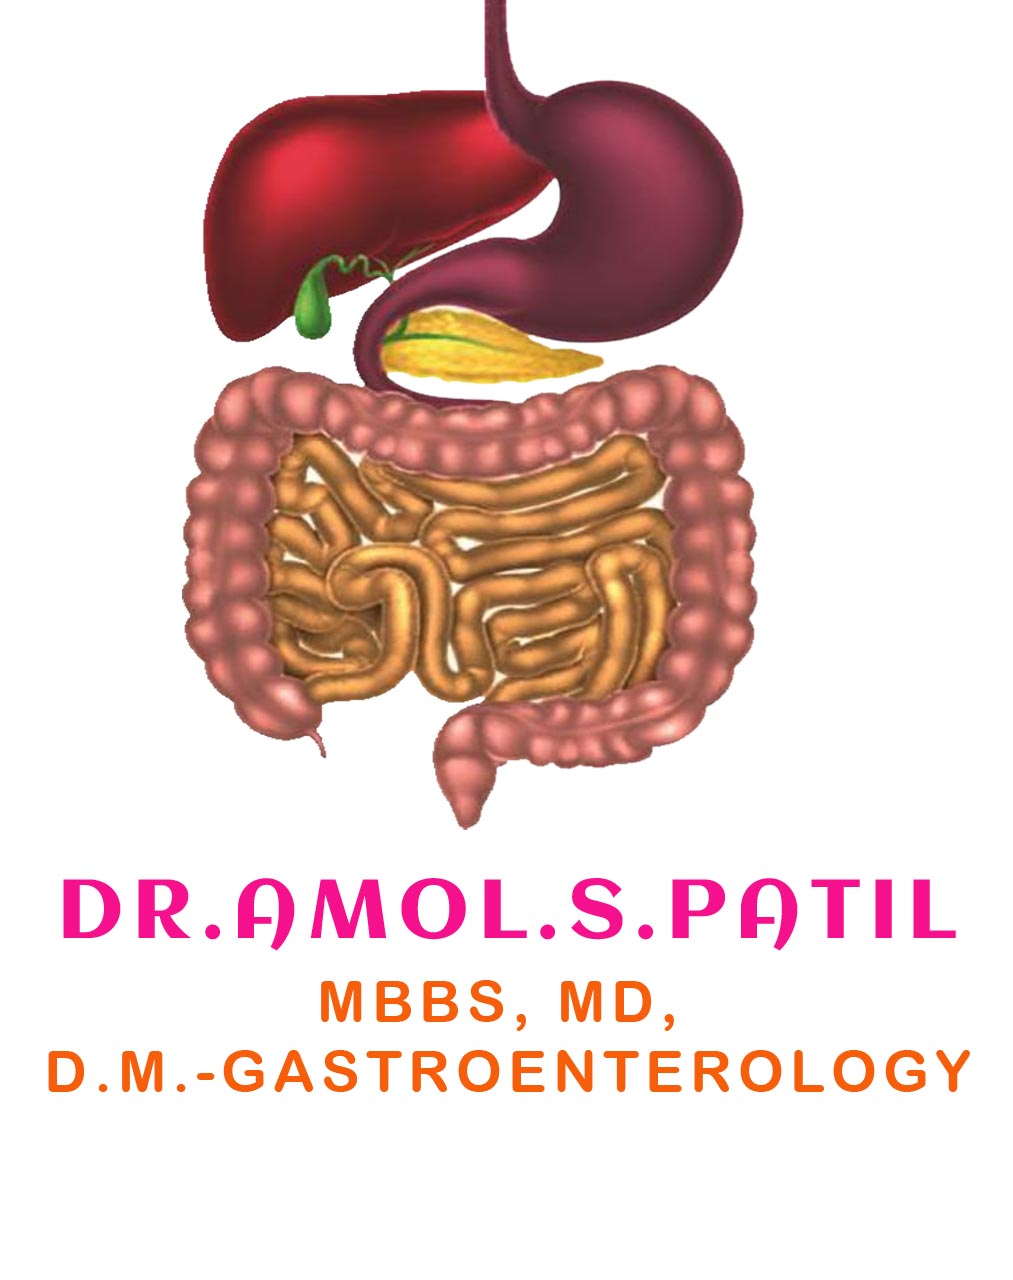 Dr. Amol. S. Patil <br>(MBBS, MD,D.M.- Gastroenterology)